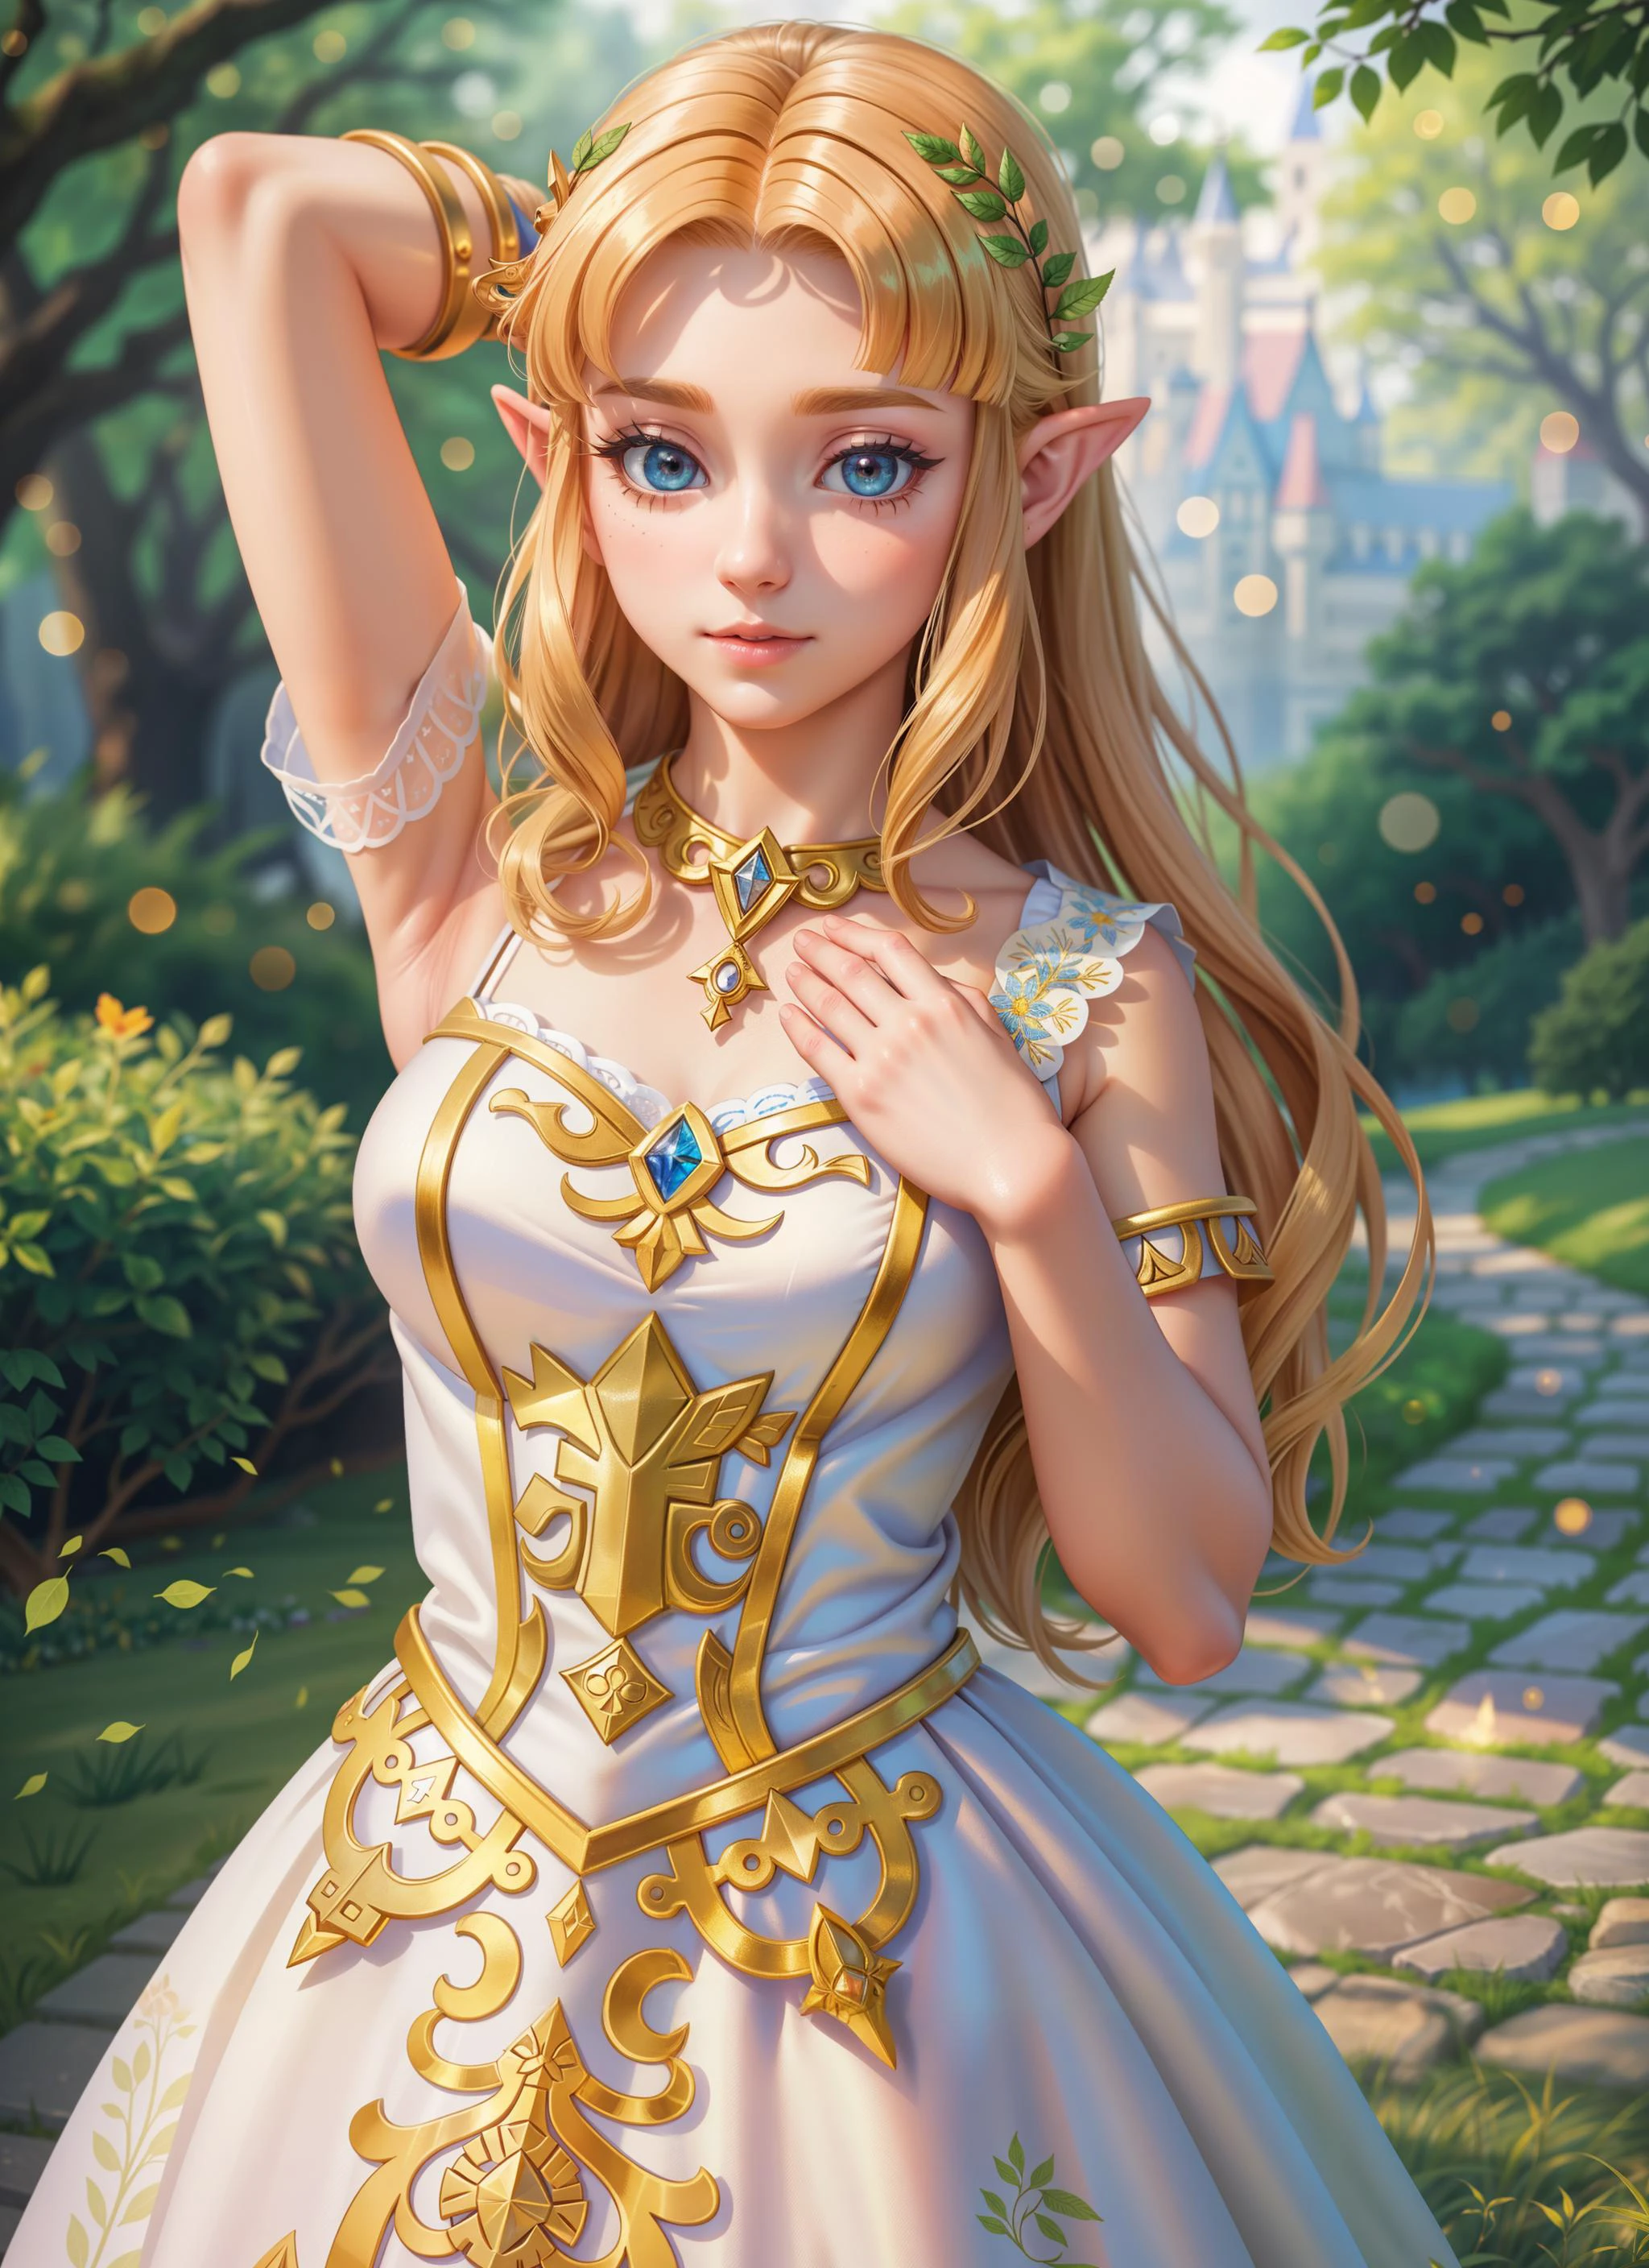 (Niedlich:1.2) Porträt einer posierenden Zelda, ein Arm erhoben, empfindlich, Prinzessinenkleid, Schloss, Laub, traumhaft, neblig, (Meisterwerk:1.2) (fotorealistisch:1.2) (bokeh) (beste Qualität) (detaillierte Haut:1.3) (komplizierte Details) (8k) (HDR) (Filmische Beleuchtung) (scharfer Fokus)